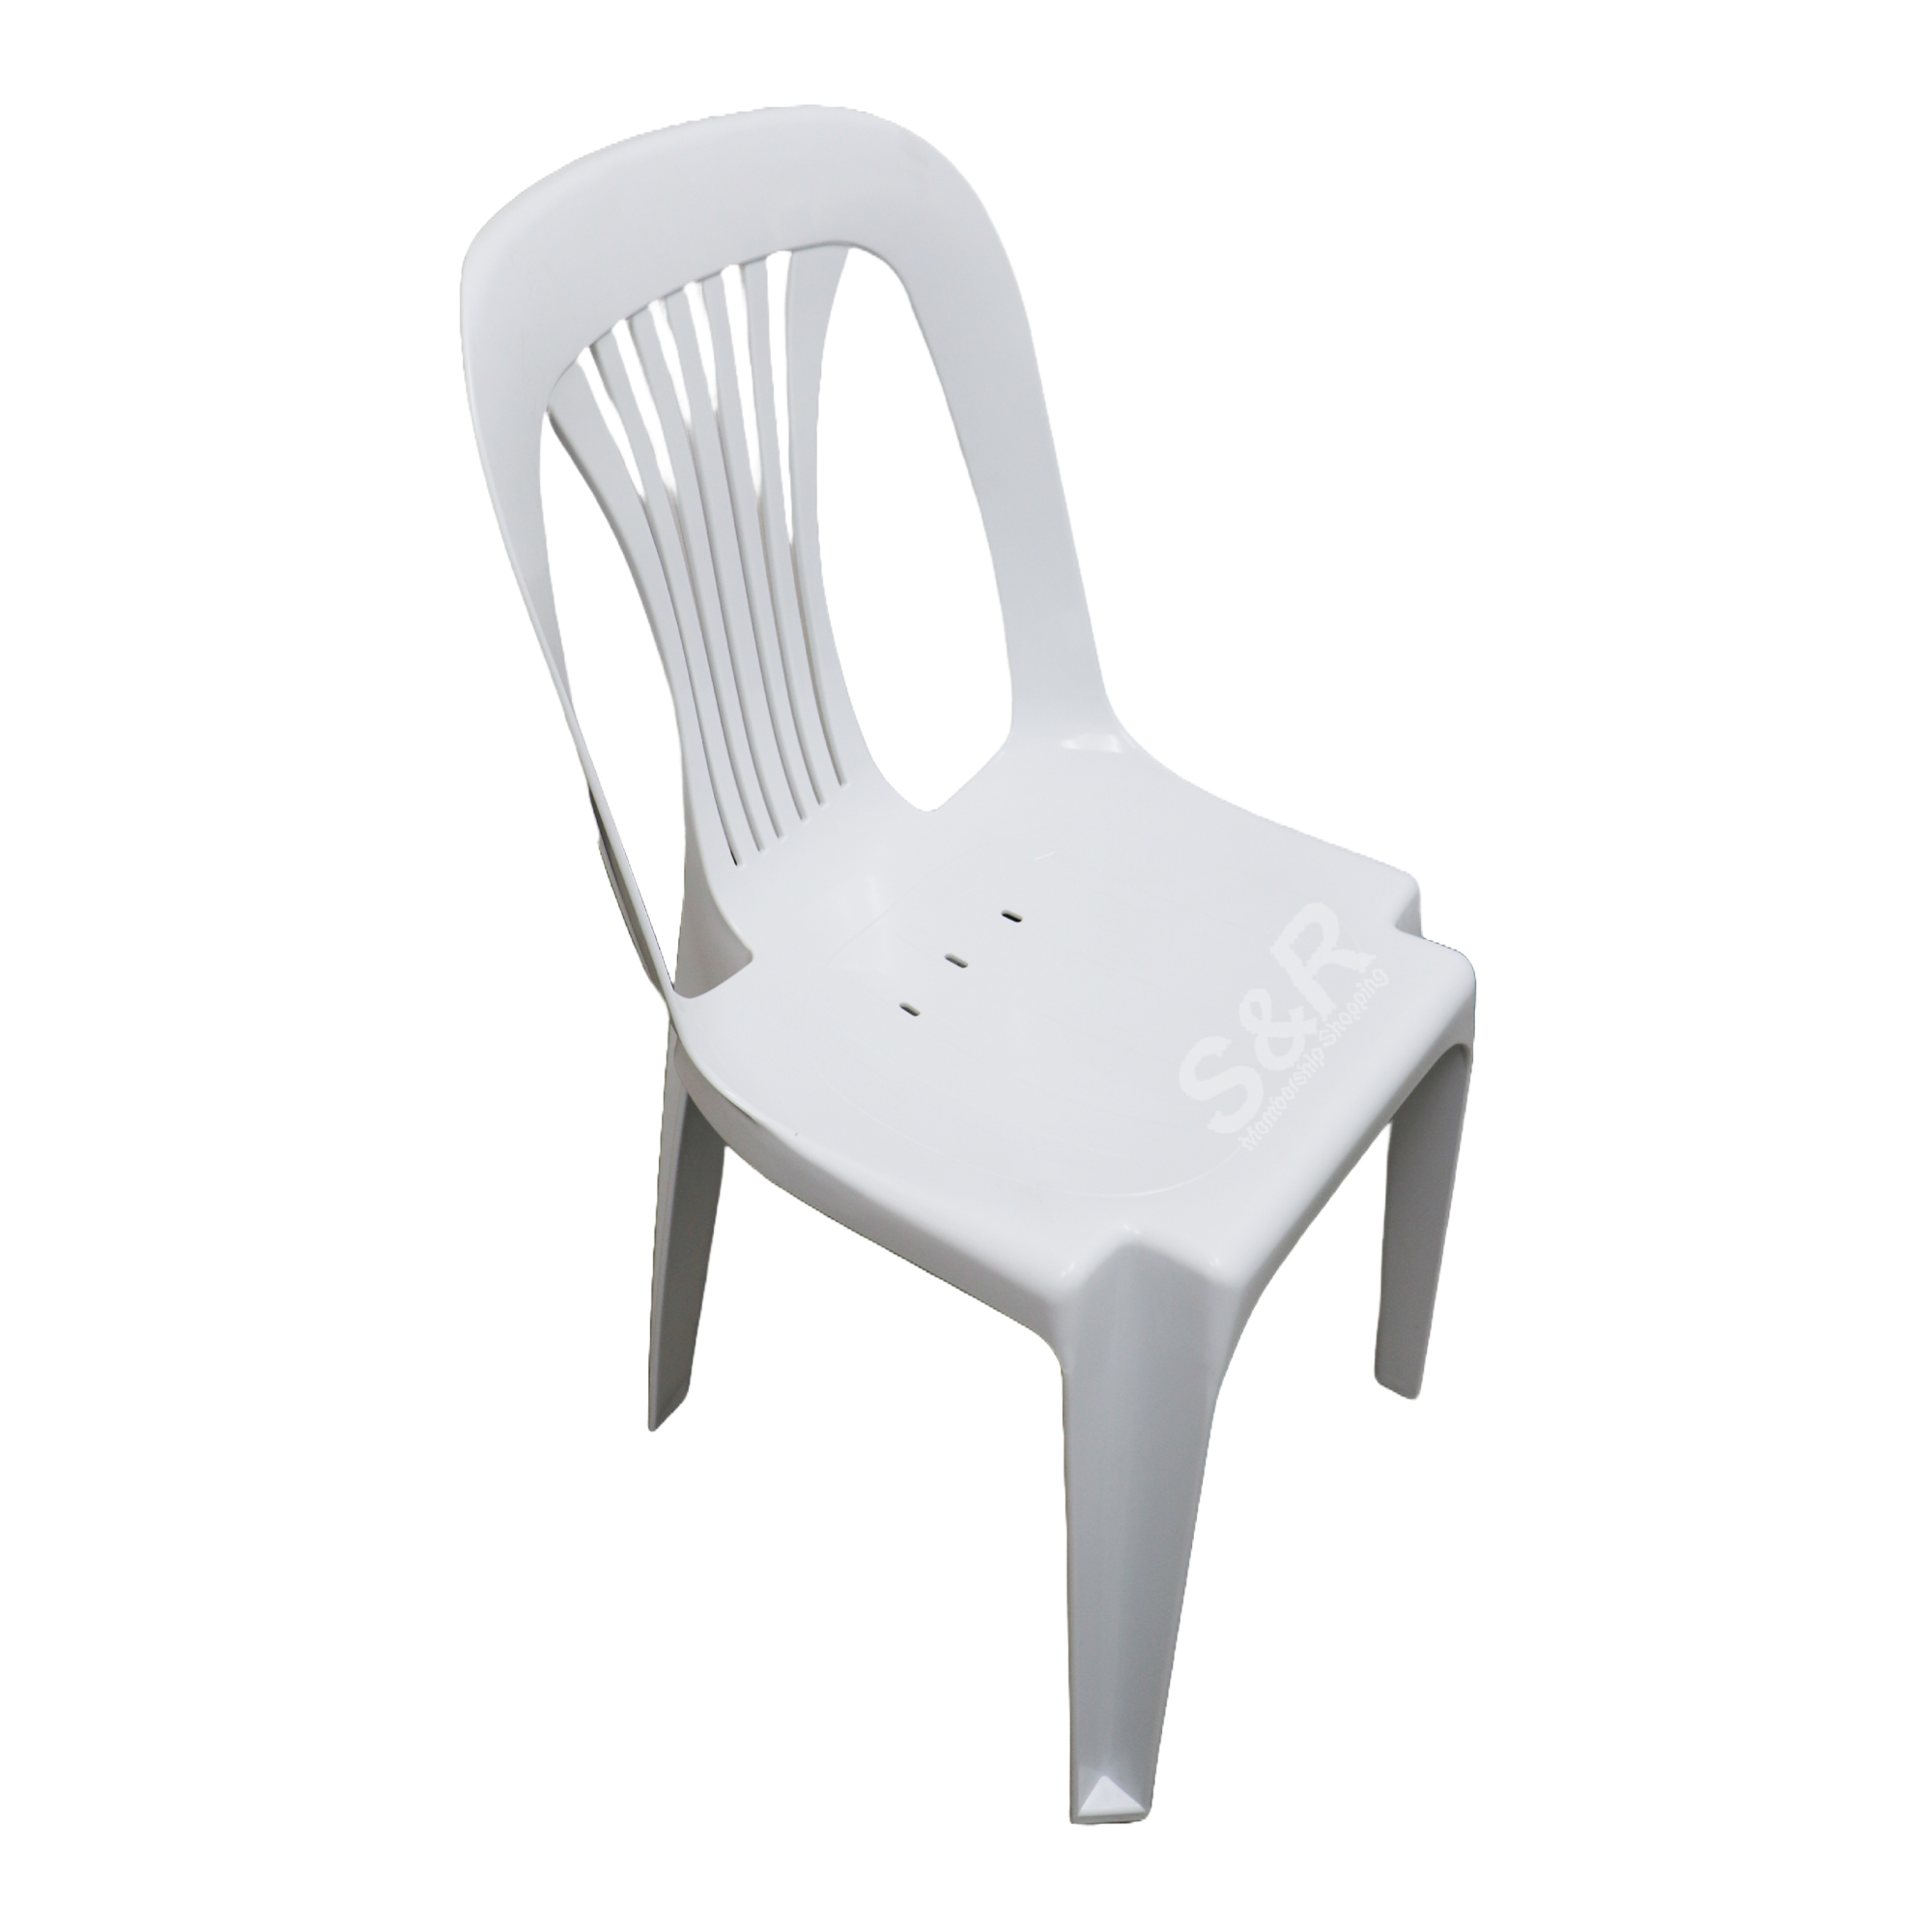 Member's Value Monoblock Chair White